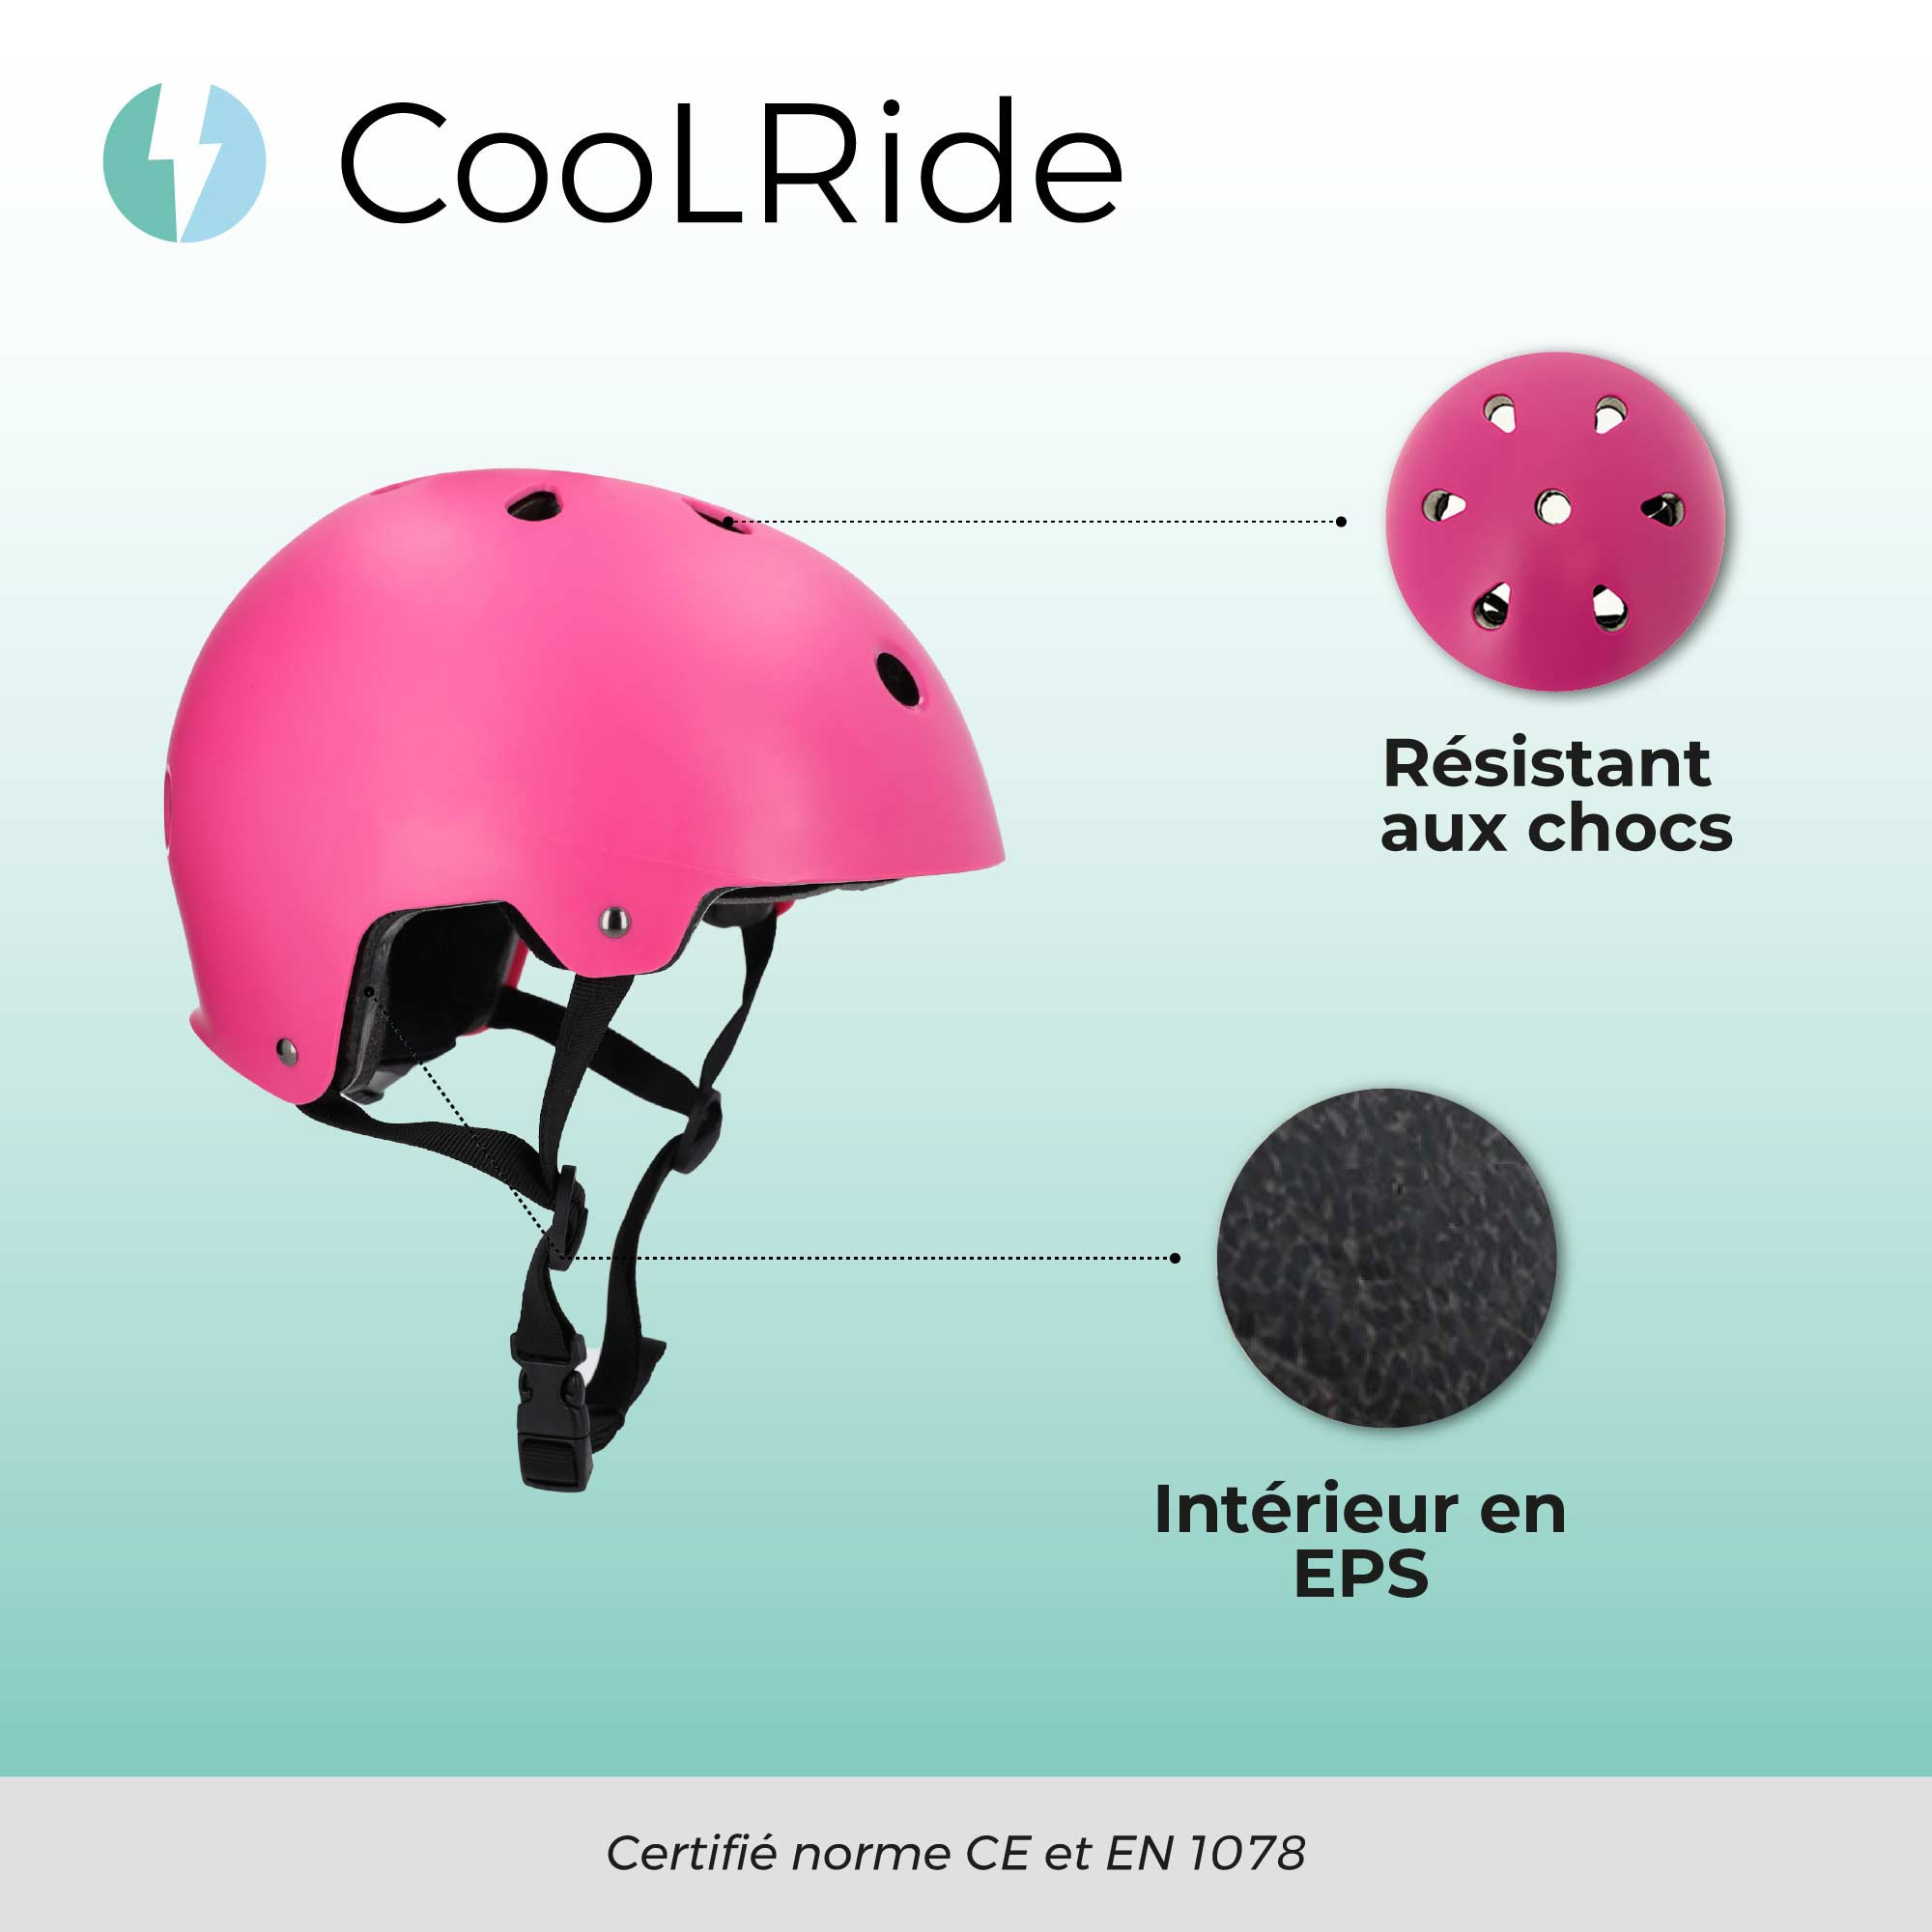 Cool ride CASQUE MULTISPORT AVEC HEADLOCK ROSE T 48-54 CM